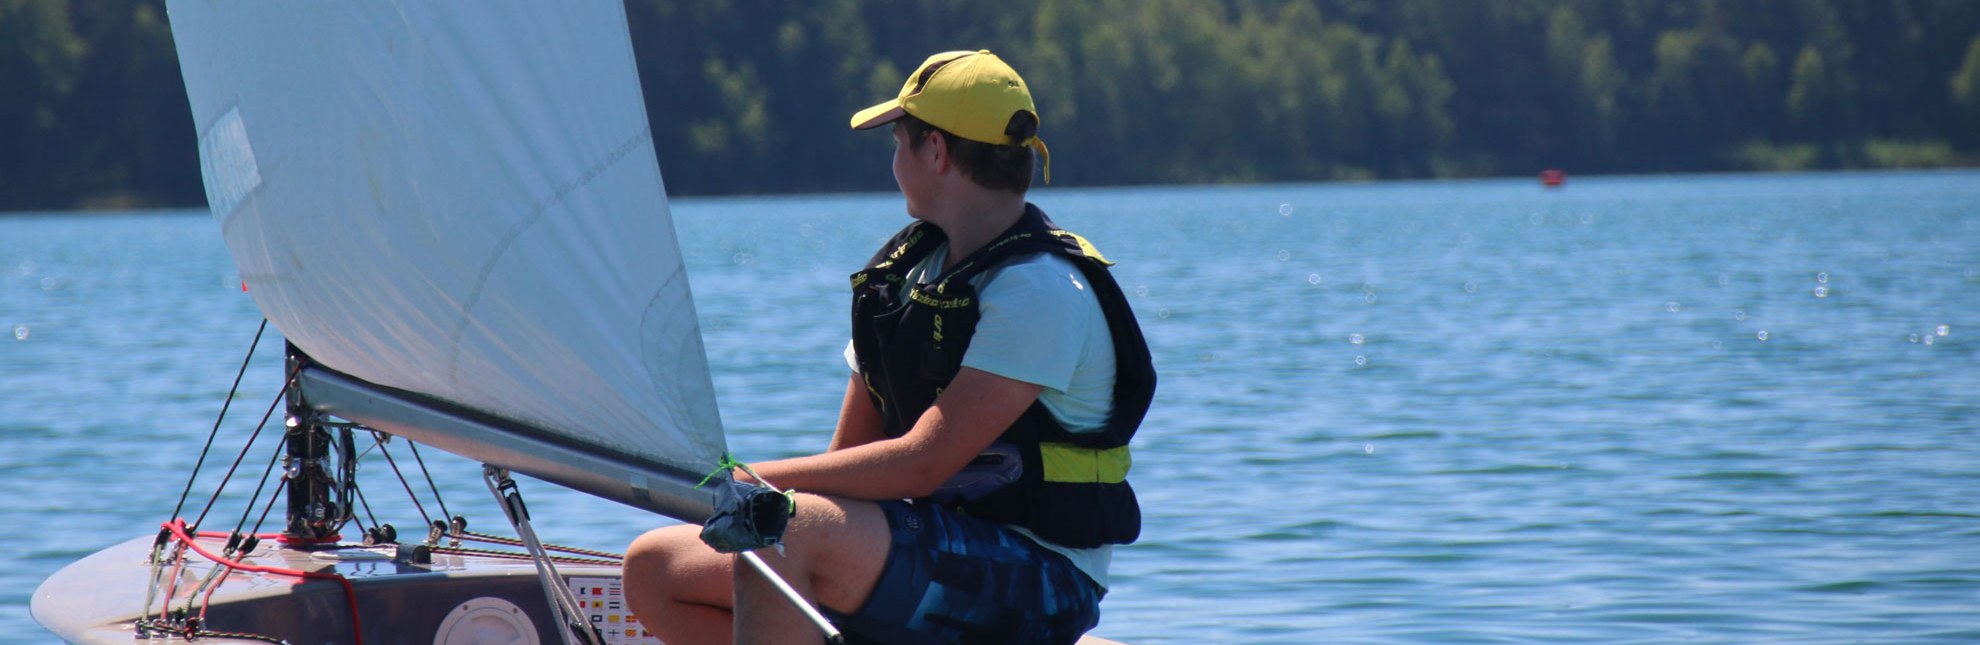 Erstmalsegeln ist eine kleine Segelschule für Kinder und Erwachsene. Segler können sich direkt ein Boot ausleihen und über den großen Ratzeburger See segeln und die Freiheit und Natur genießen., © Bendixen